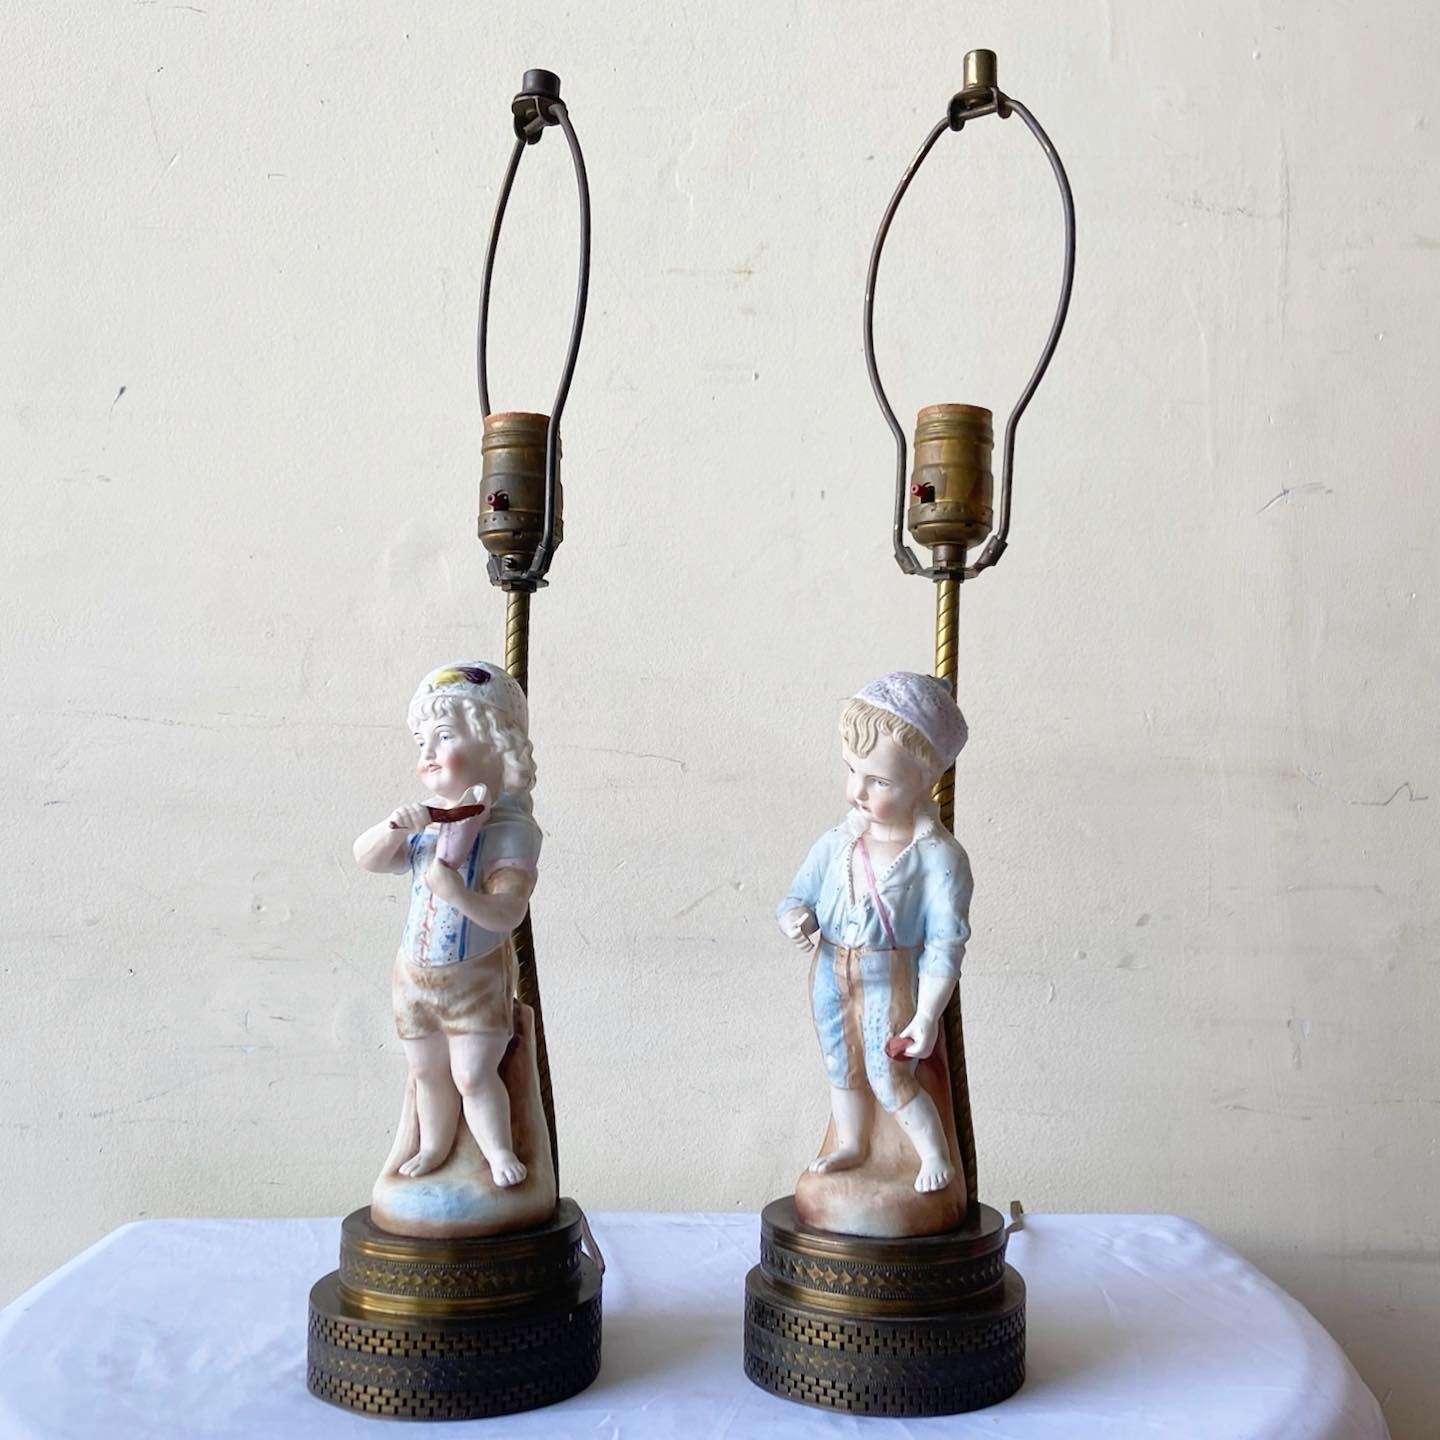 Außergewöhnliches Paar von Vintage-Keramik-Tischlampen. Jede Lampe zeigt einen Jungen und ein Mädchen mit einem Messingfuß.
